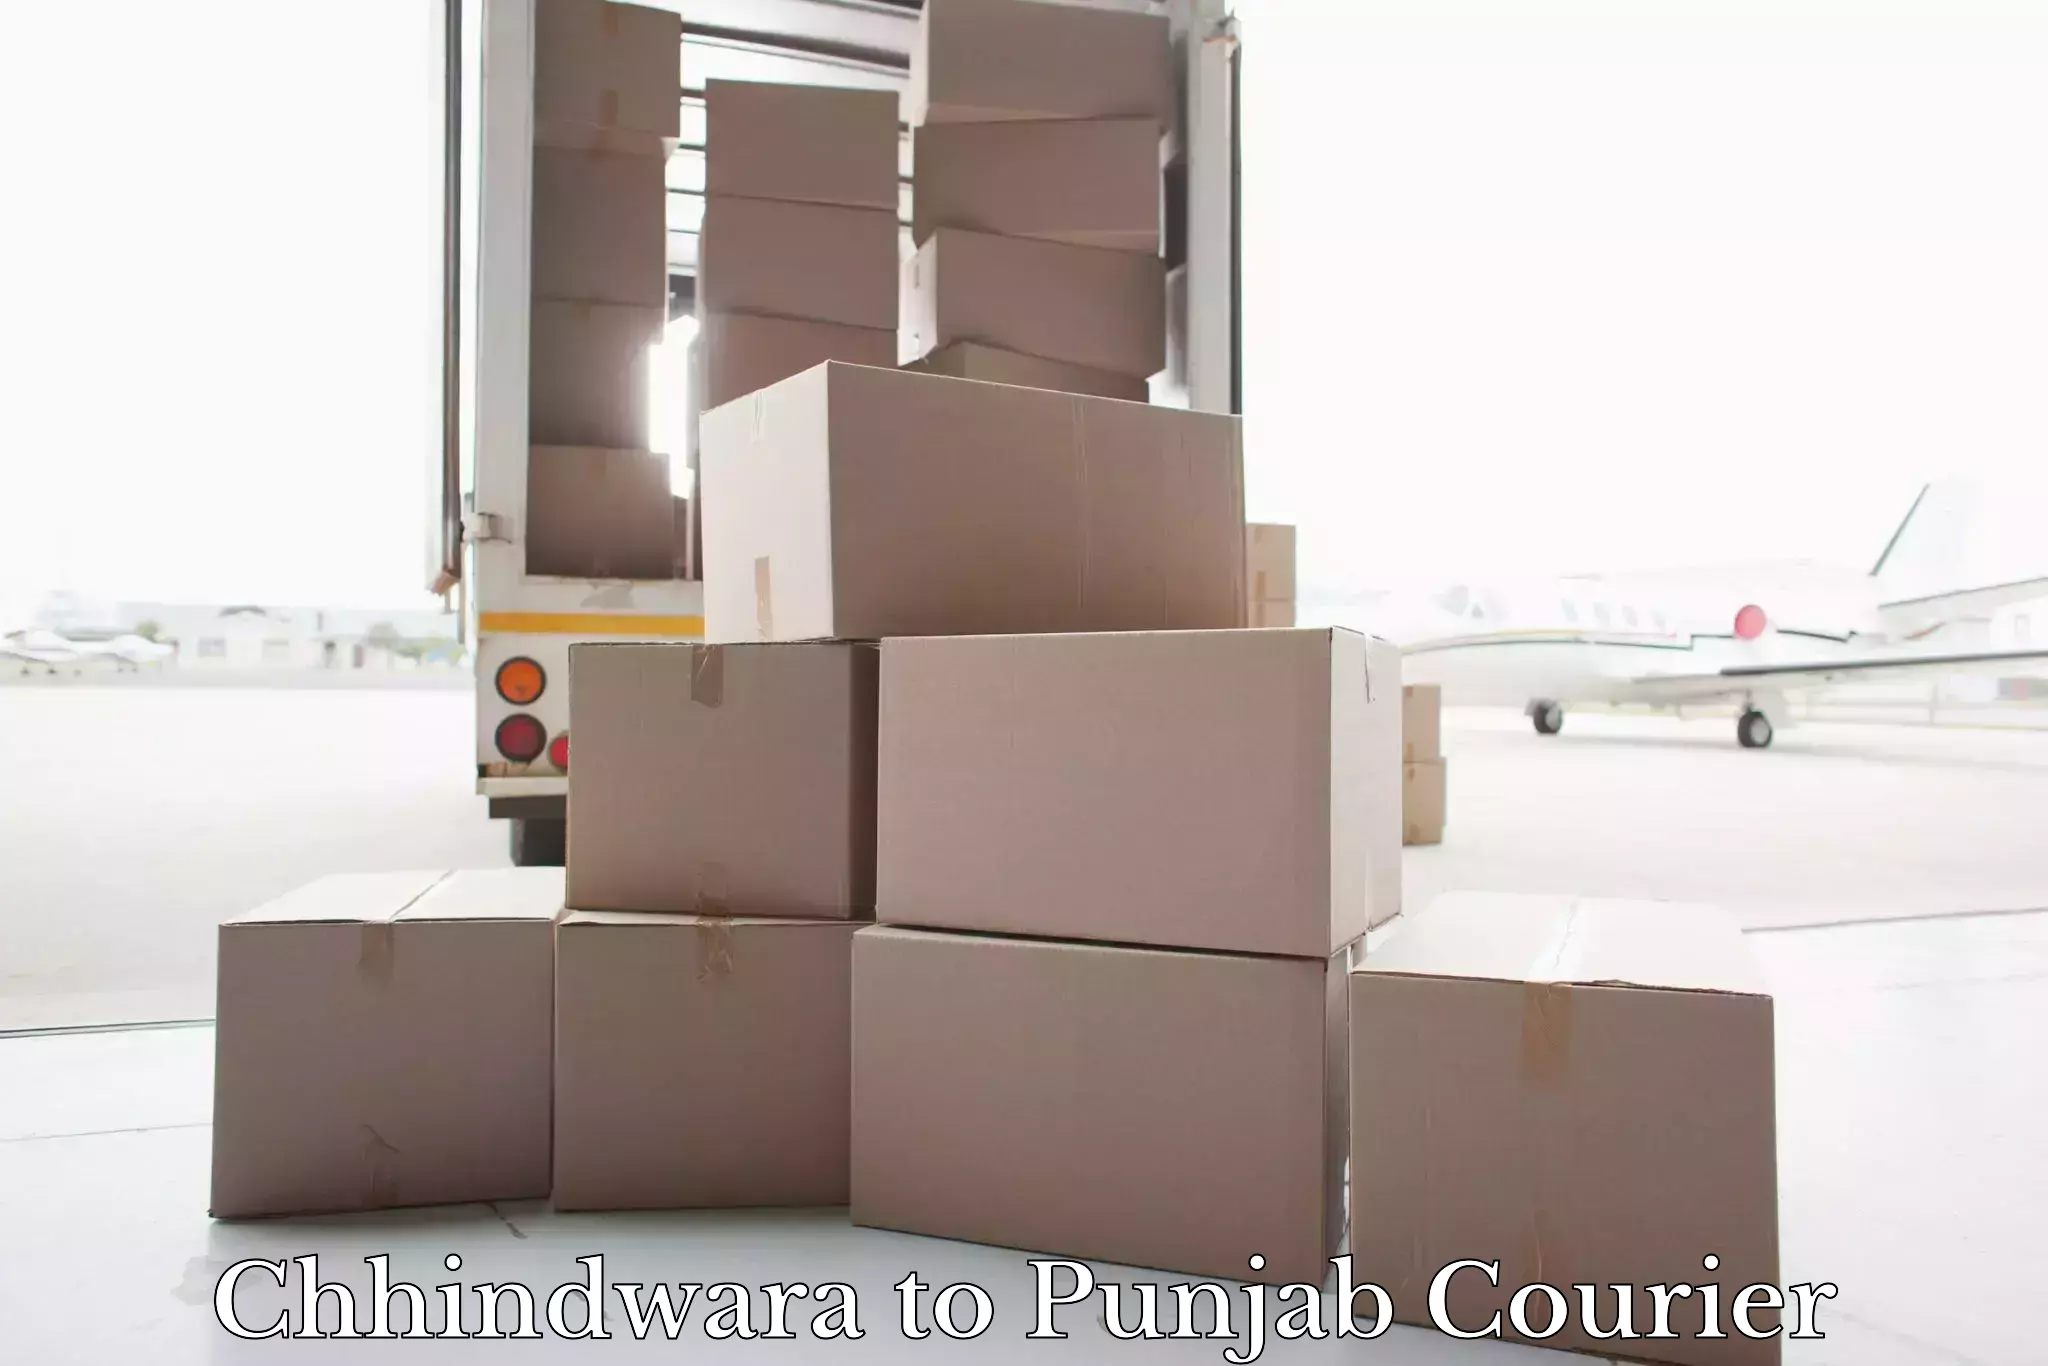 Luggage transport consultancy Chhindwara to Punjab